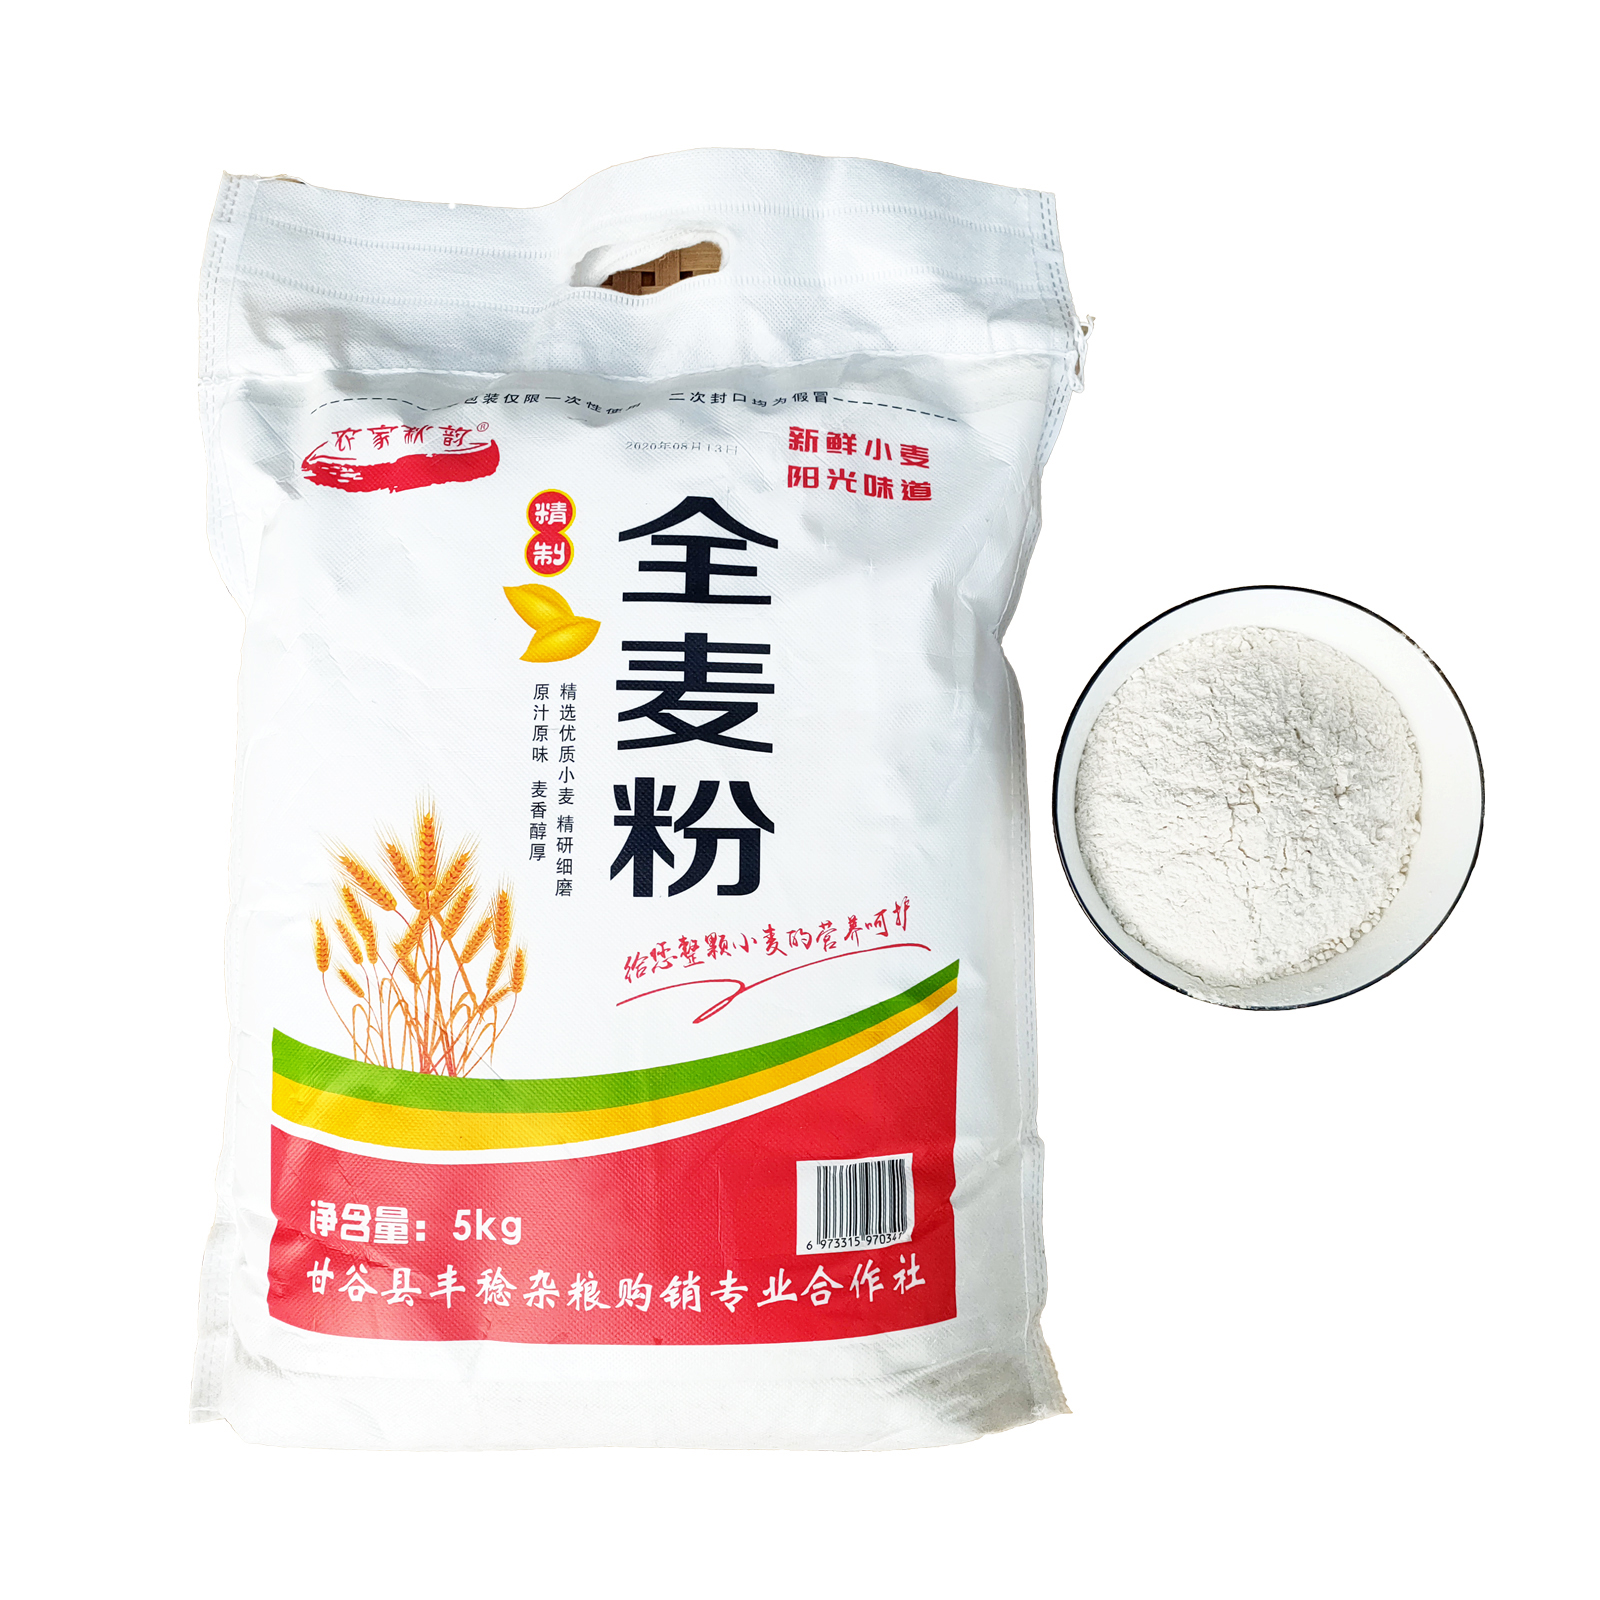 【农家秋韵】石磨全麦面粉10斤装 食品 营养